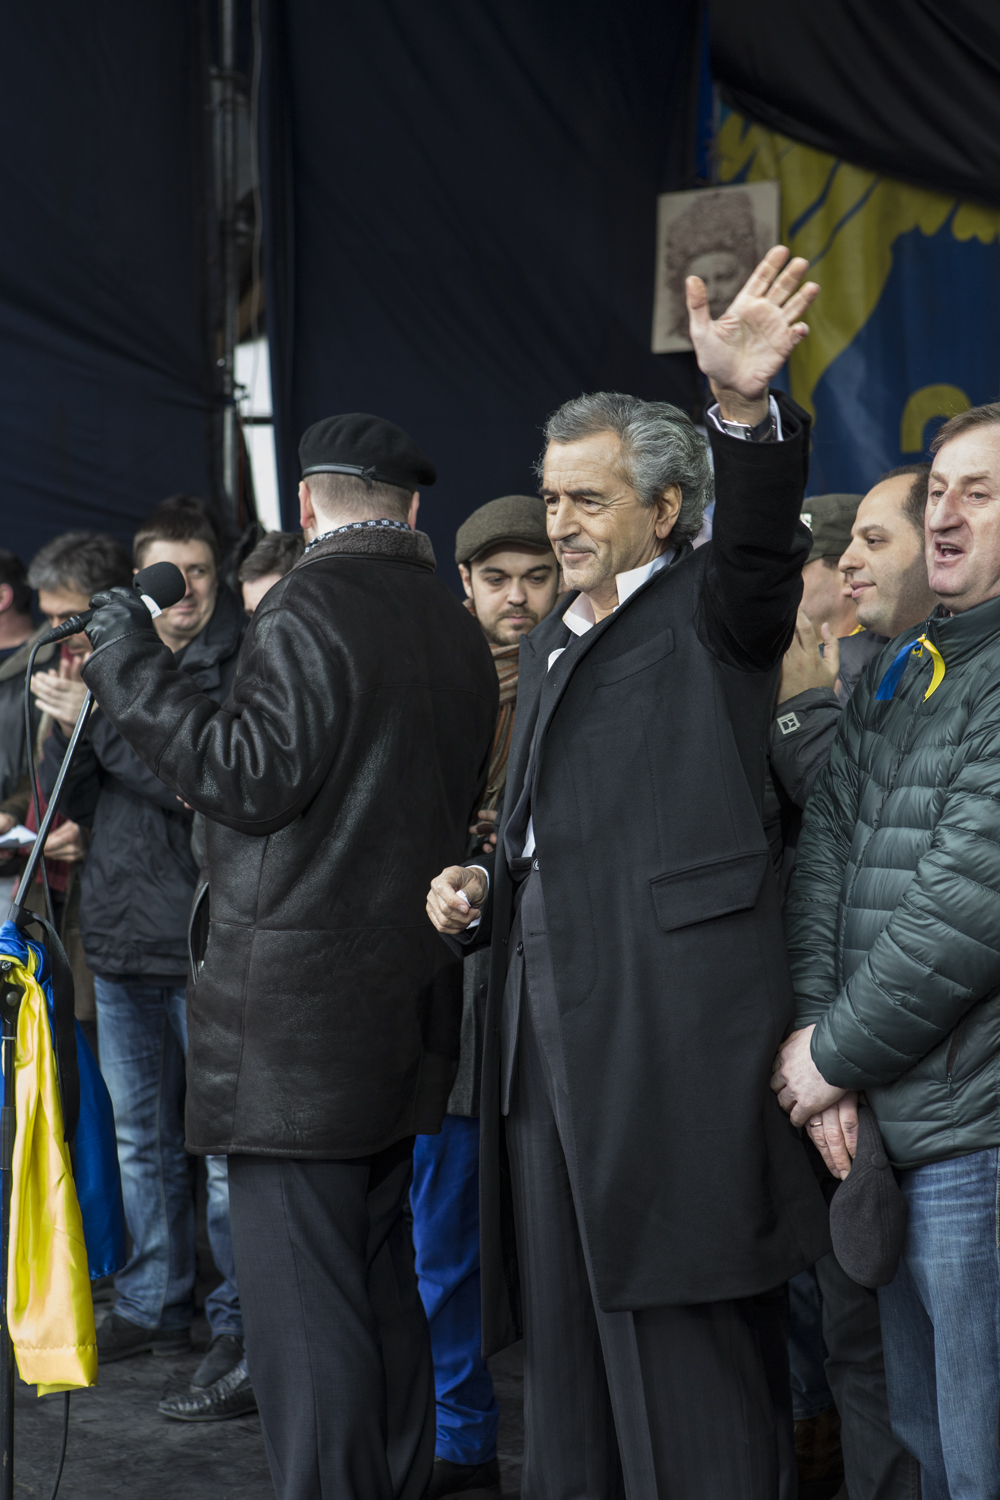 Intervention de Bernard-Henri Levy, qui salue la foule, sur la place Maidan à Kiev le 2 mars 2014.